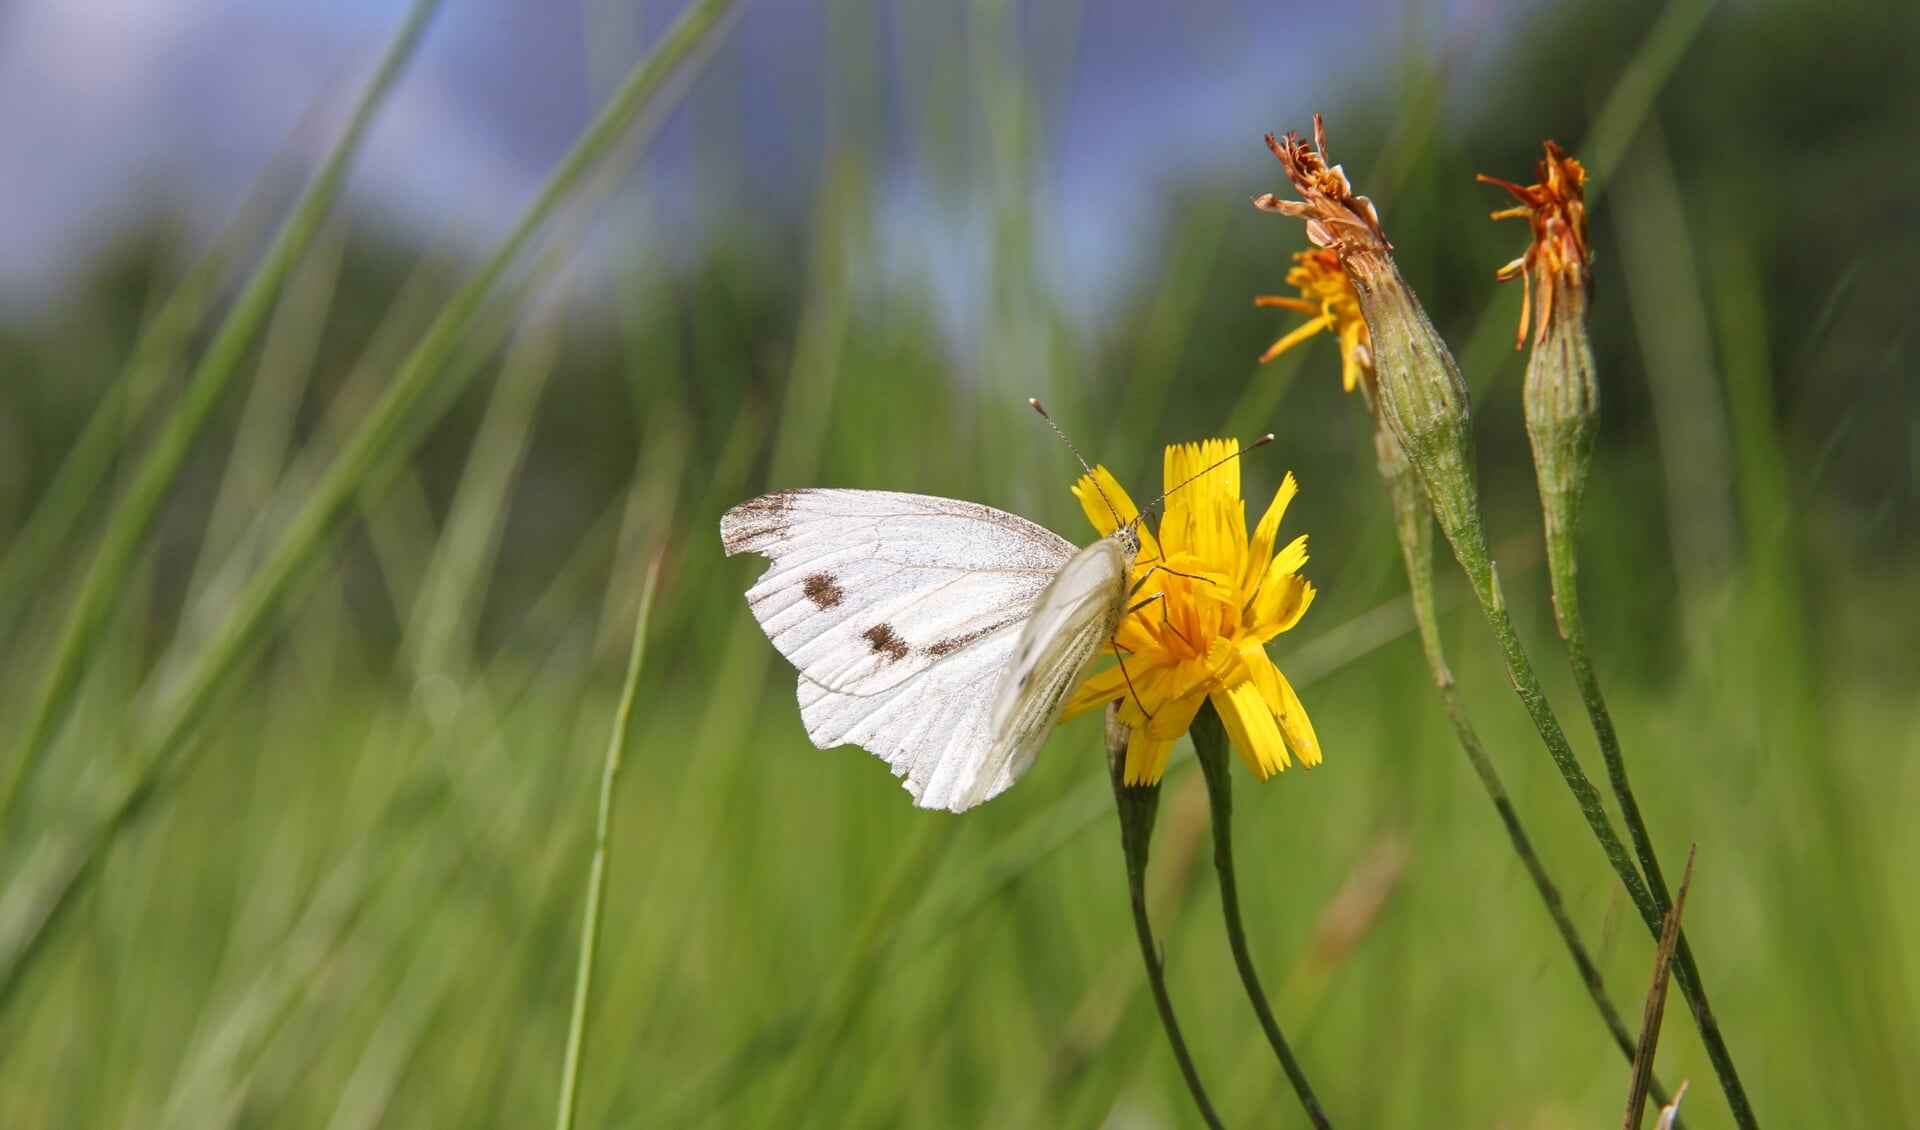 De graslanden vormden een belangrijke nectarbron voor vlinders als het groot koolwitje. 